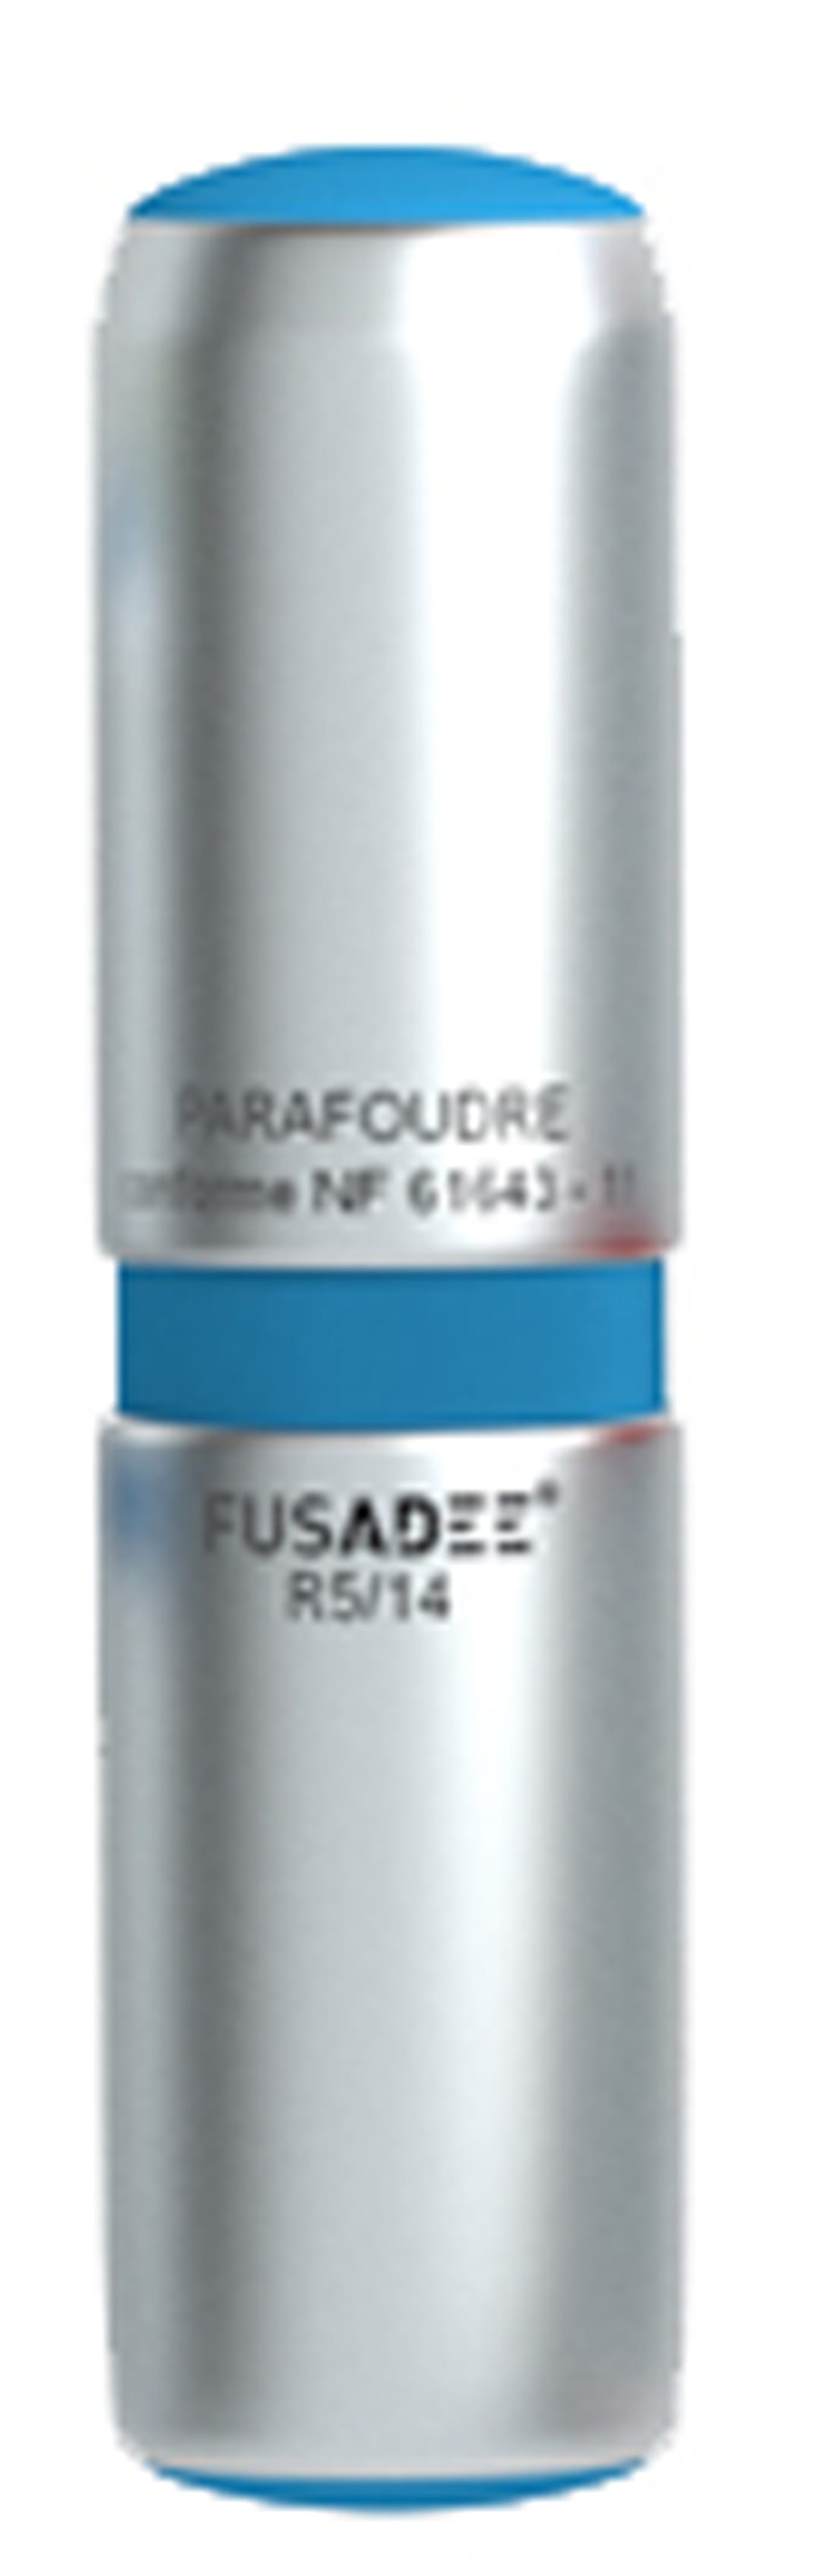 Adee - FUSADEE cartouche parafoudre 5kW 14x51 bleu Up = 0,8kV